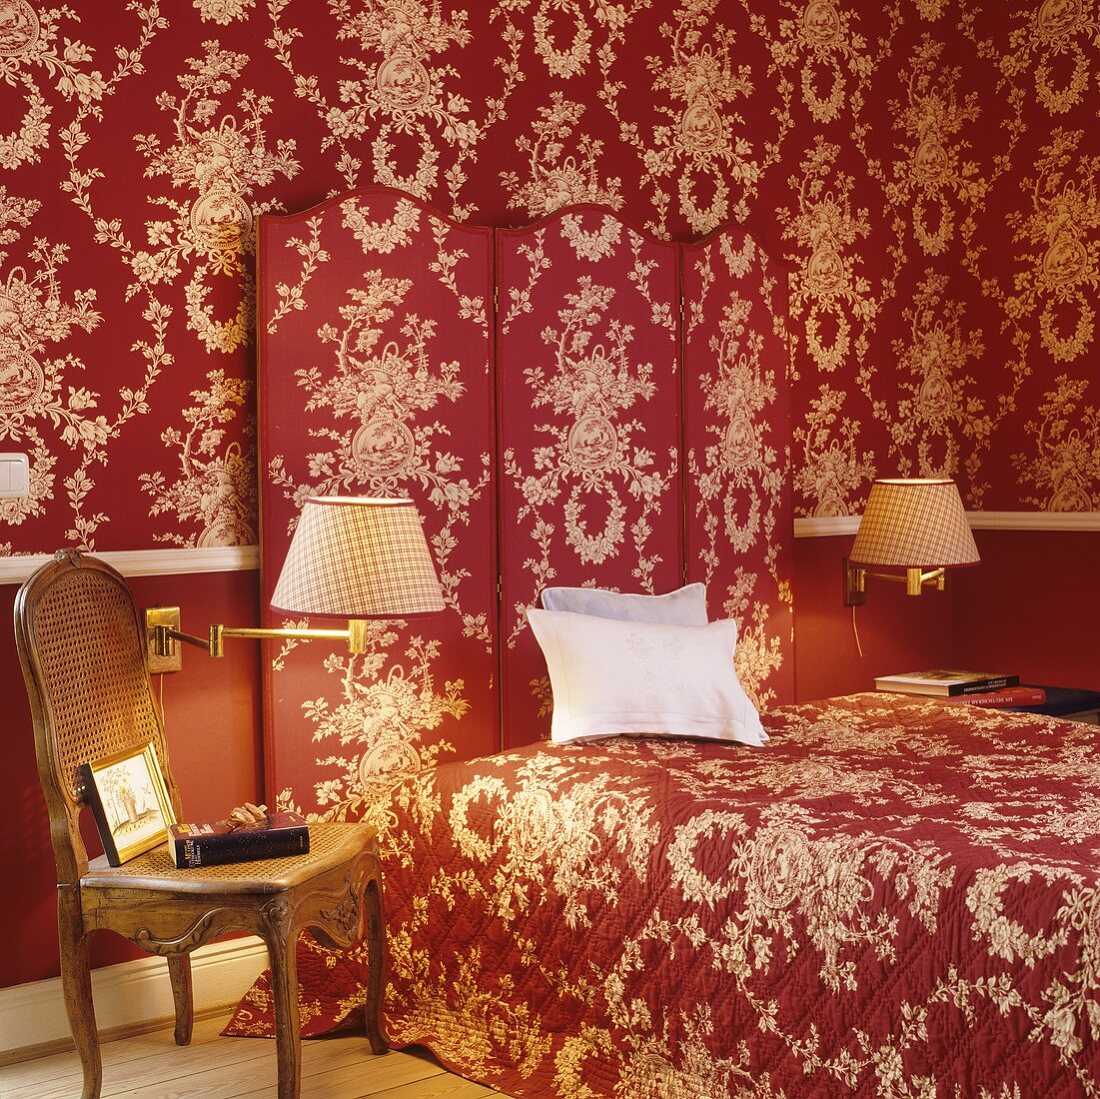 Schlafraum mit rot-weißem Blumen-Ornamentmuster auf Tapete, Paravent und Tagesdecke